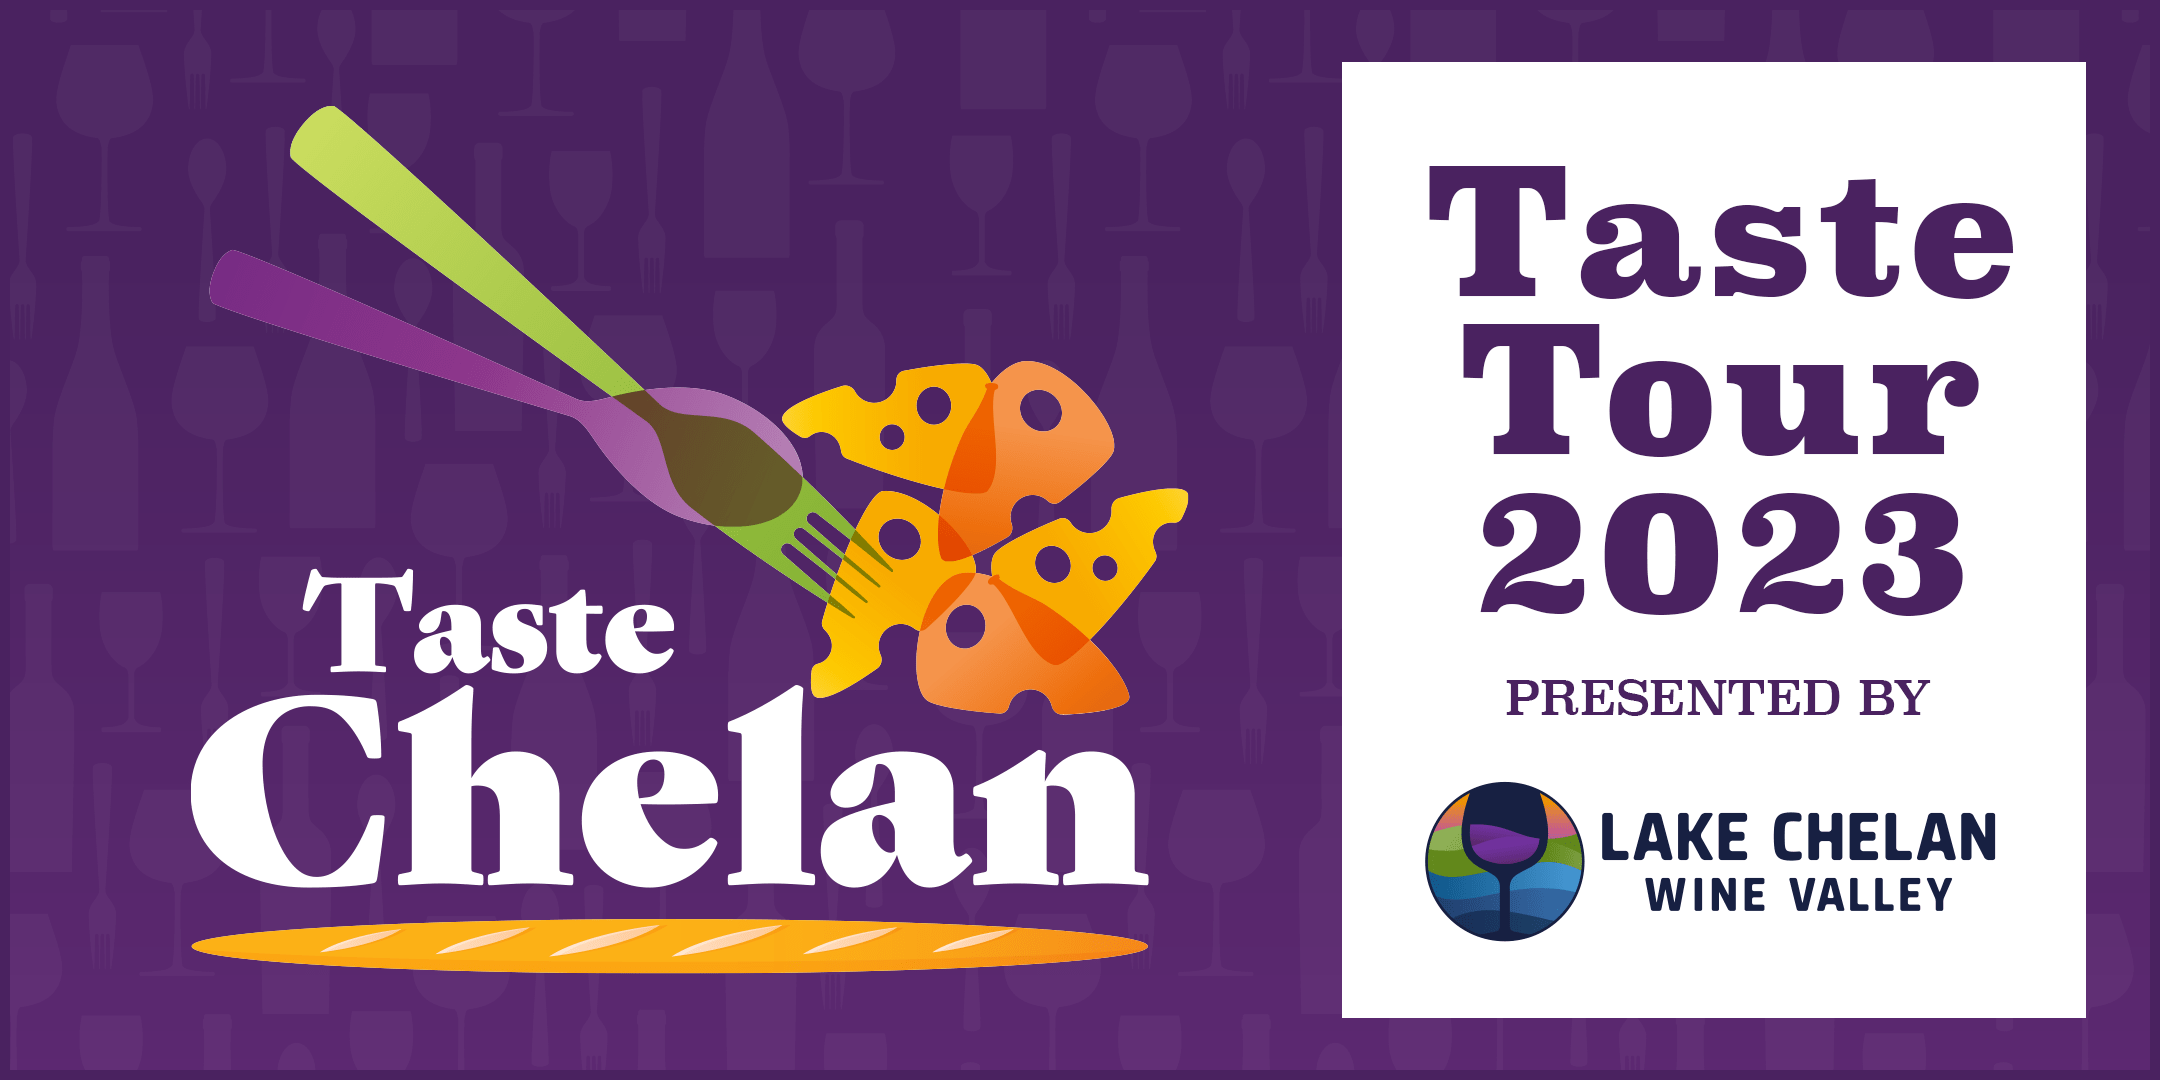 Taste Chelan - 2023 Taste Tour - Header Image